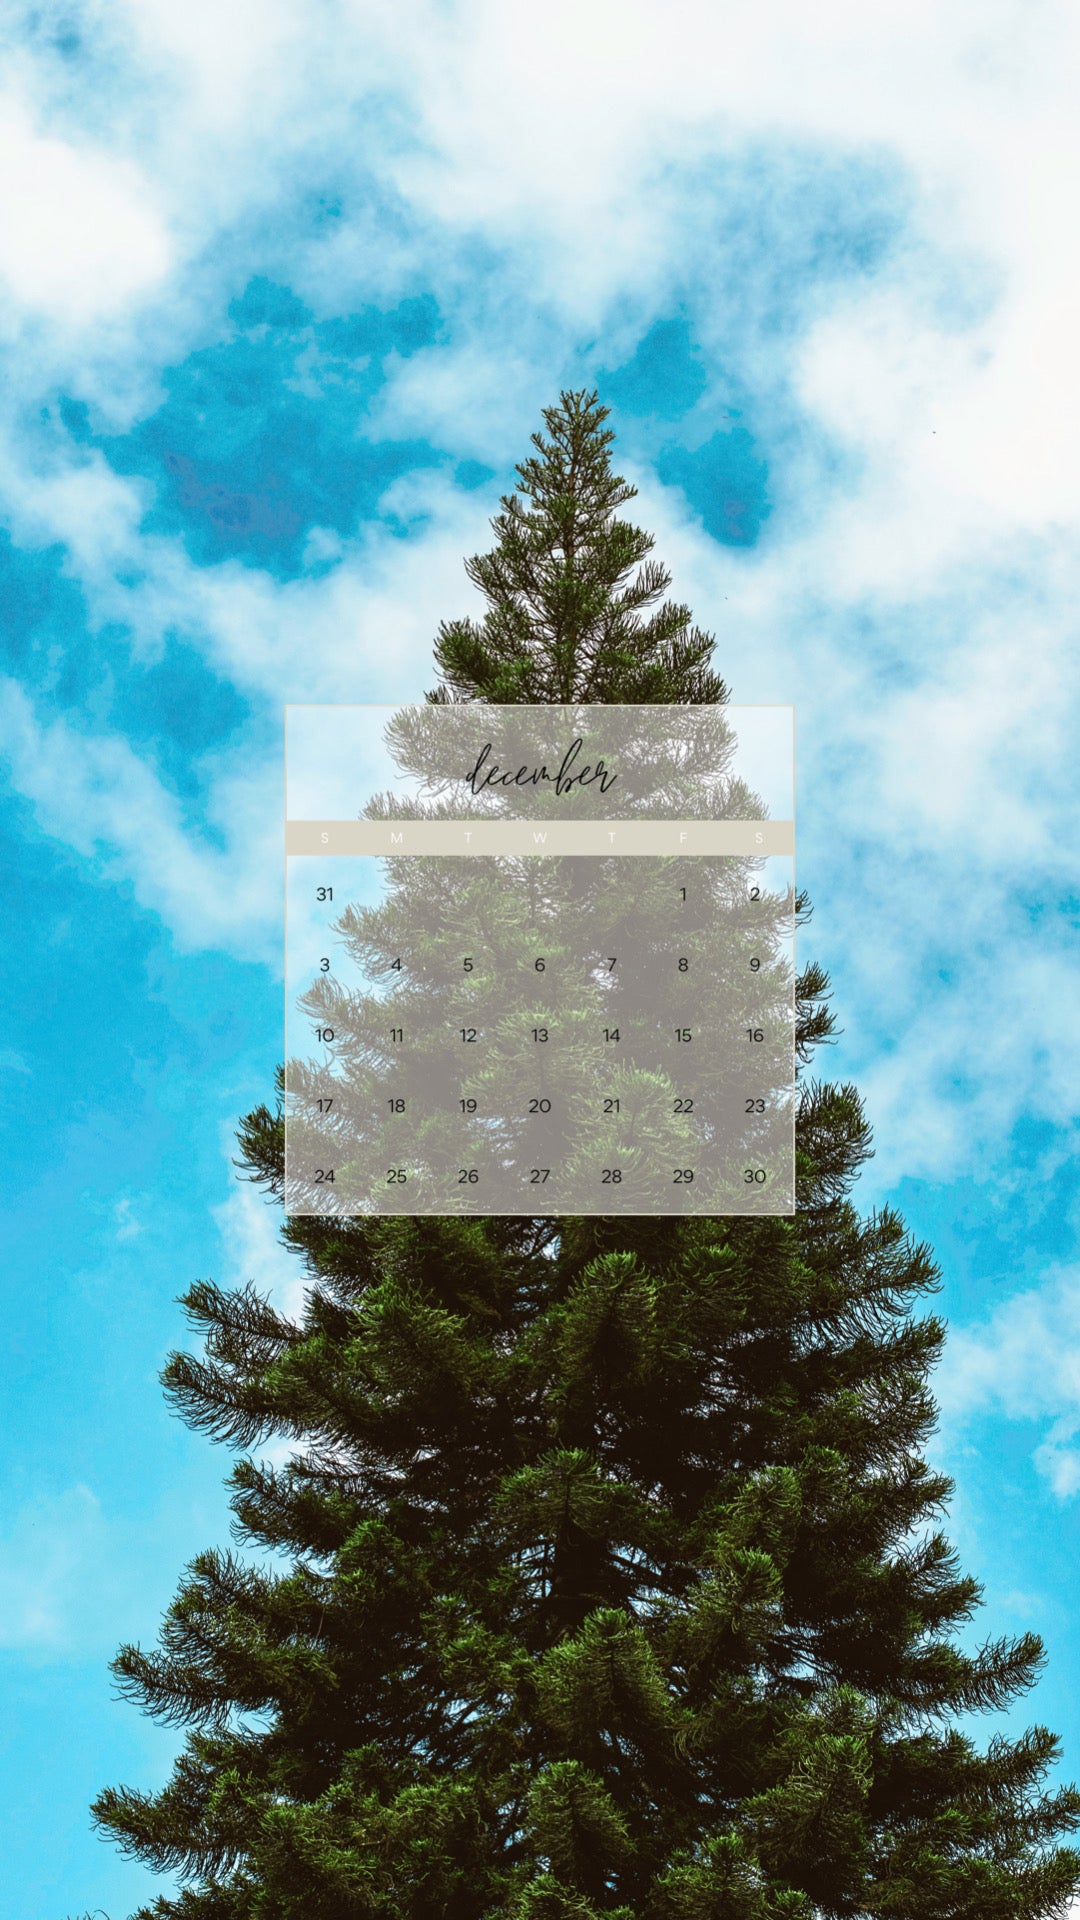 december iphone wallpaper background calendar